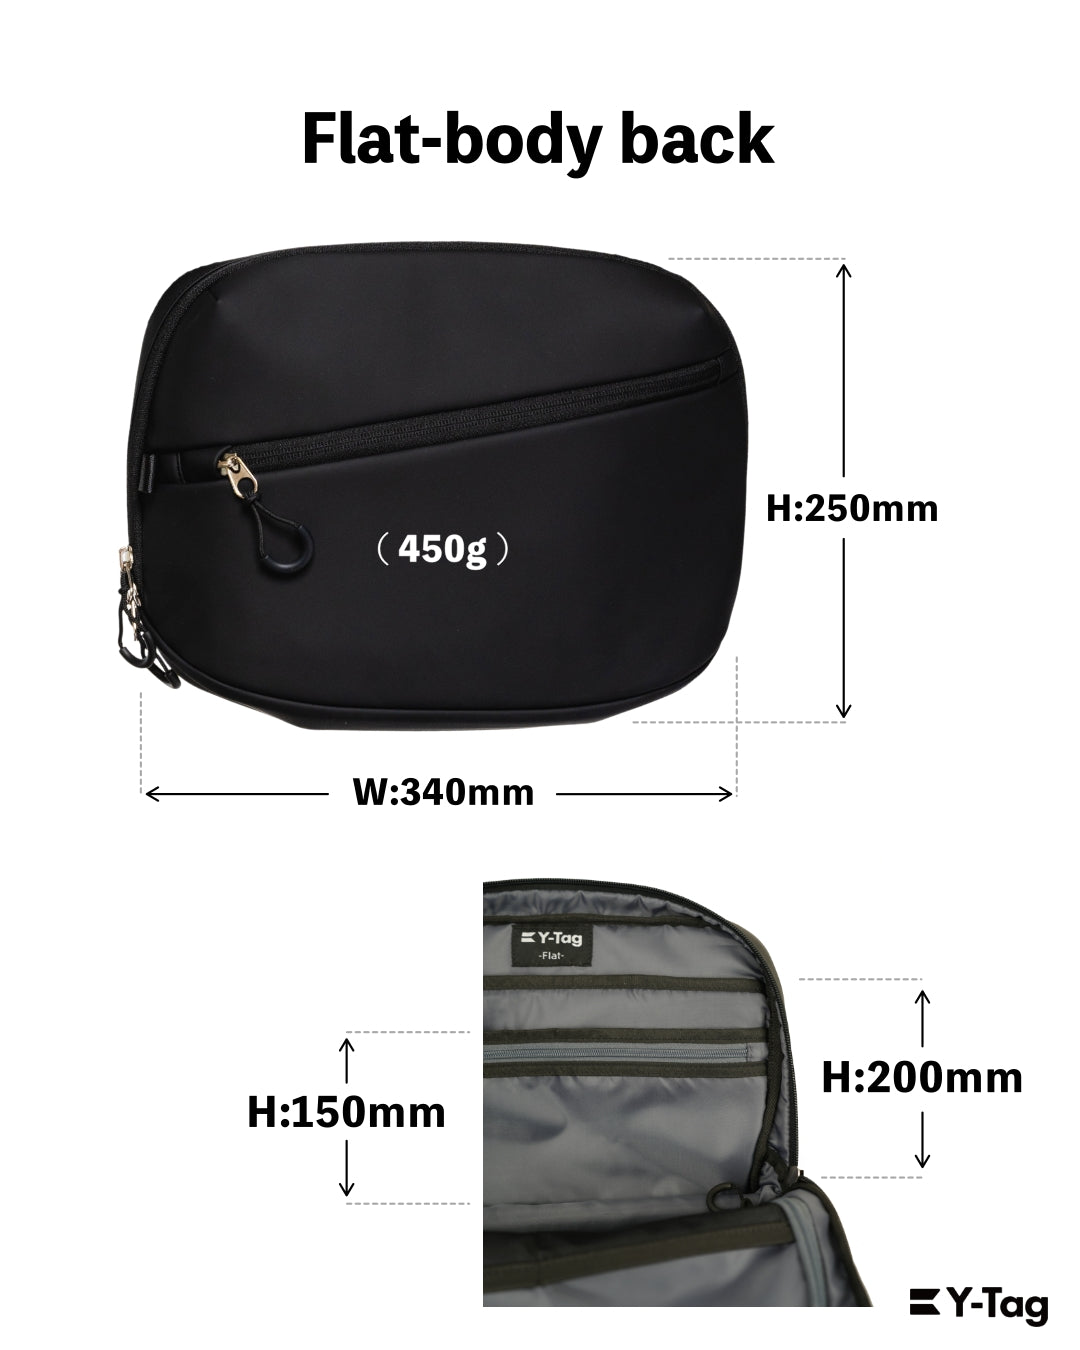 6,900円Y-Tag Flat-body bag